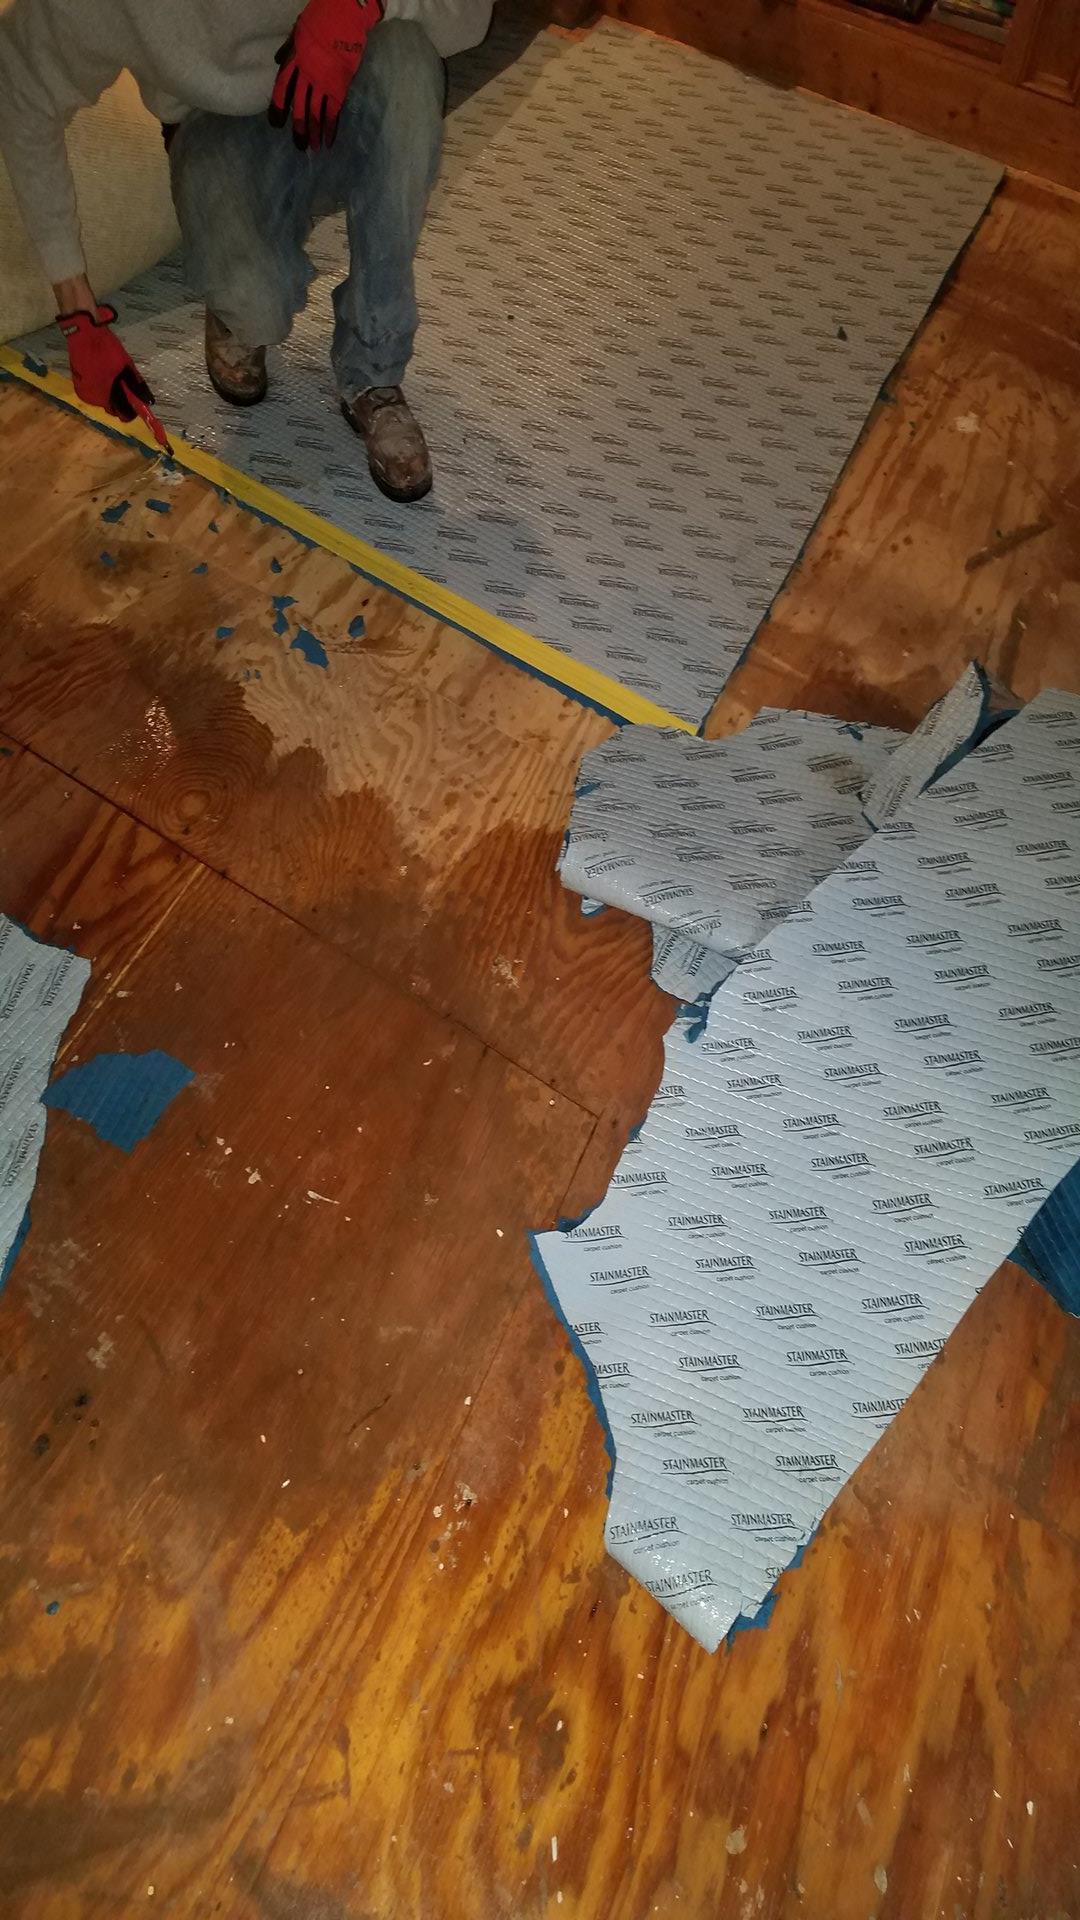 Employee repairing floor tiles